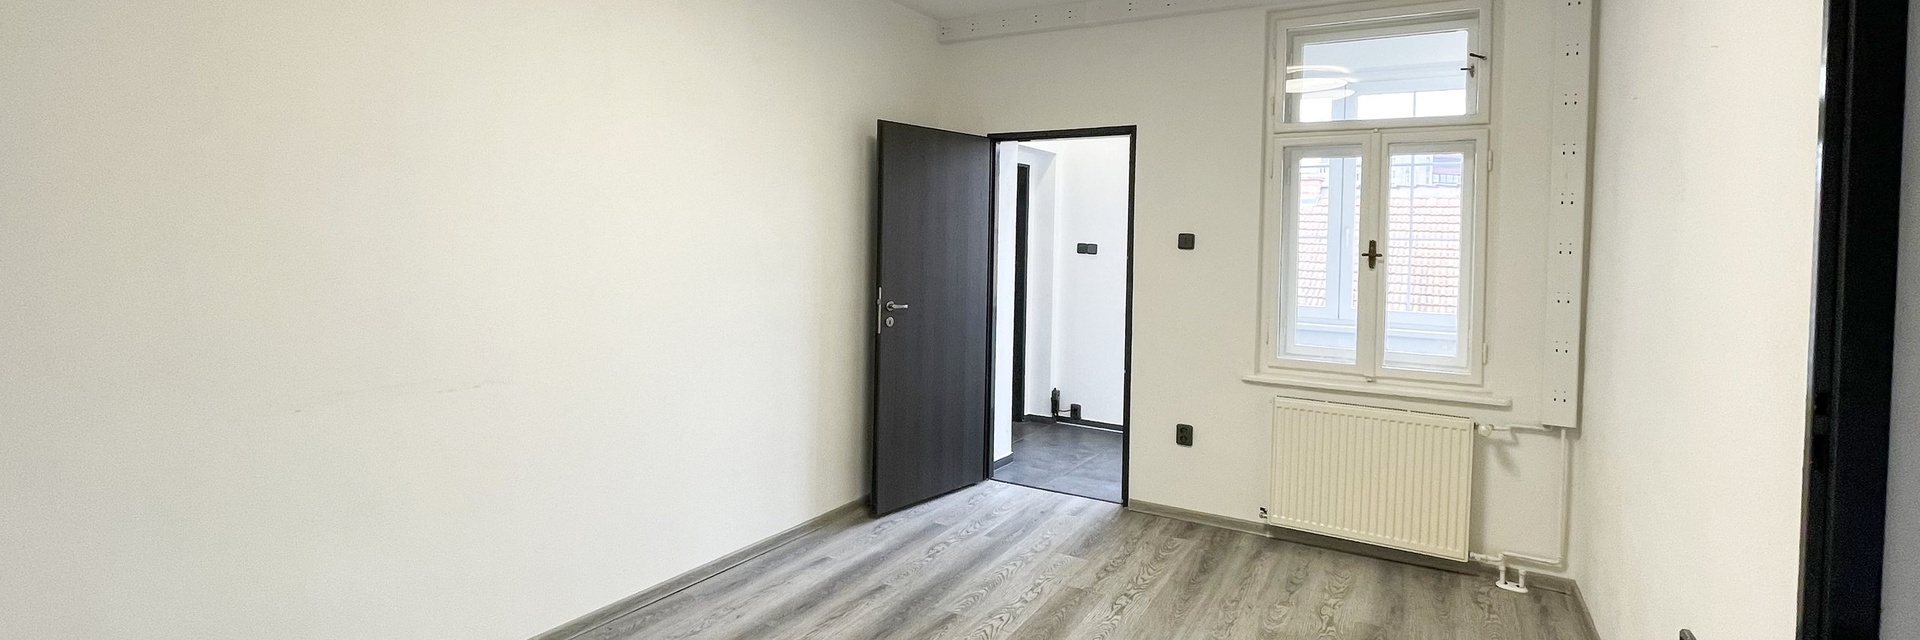 Pronájem kancelářských prostor 208 m² , ulice Hradilova, Brno - Židenice